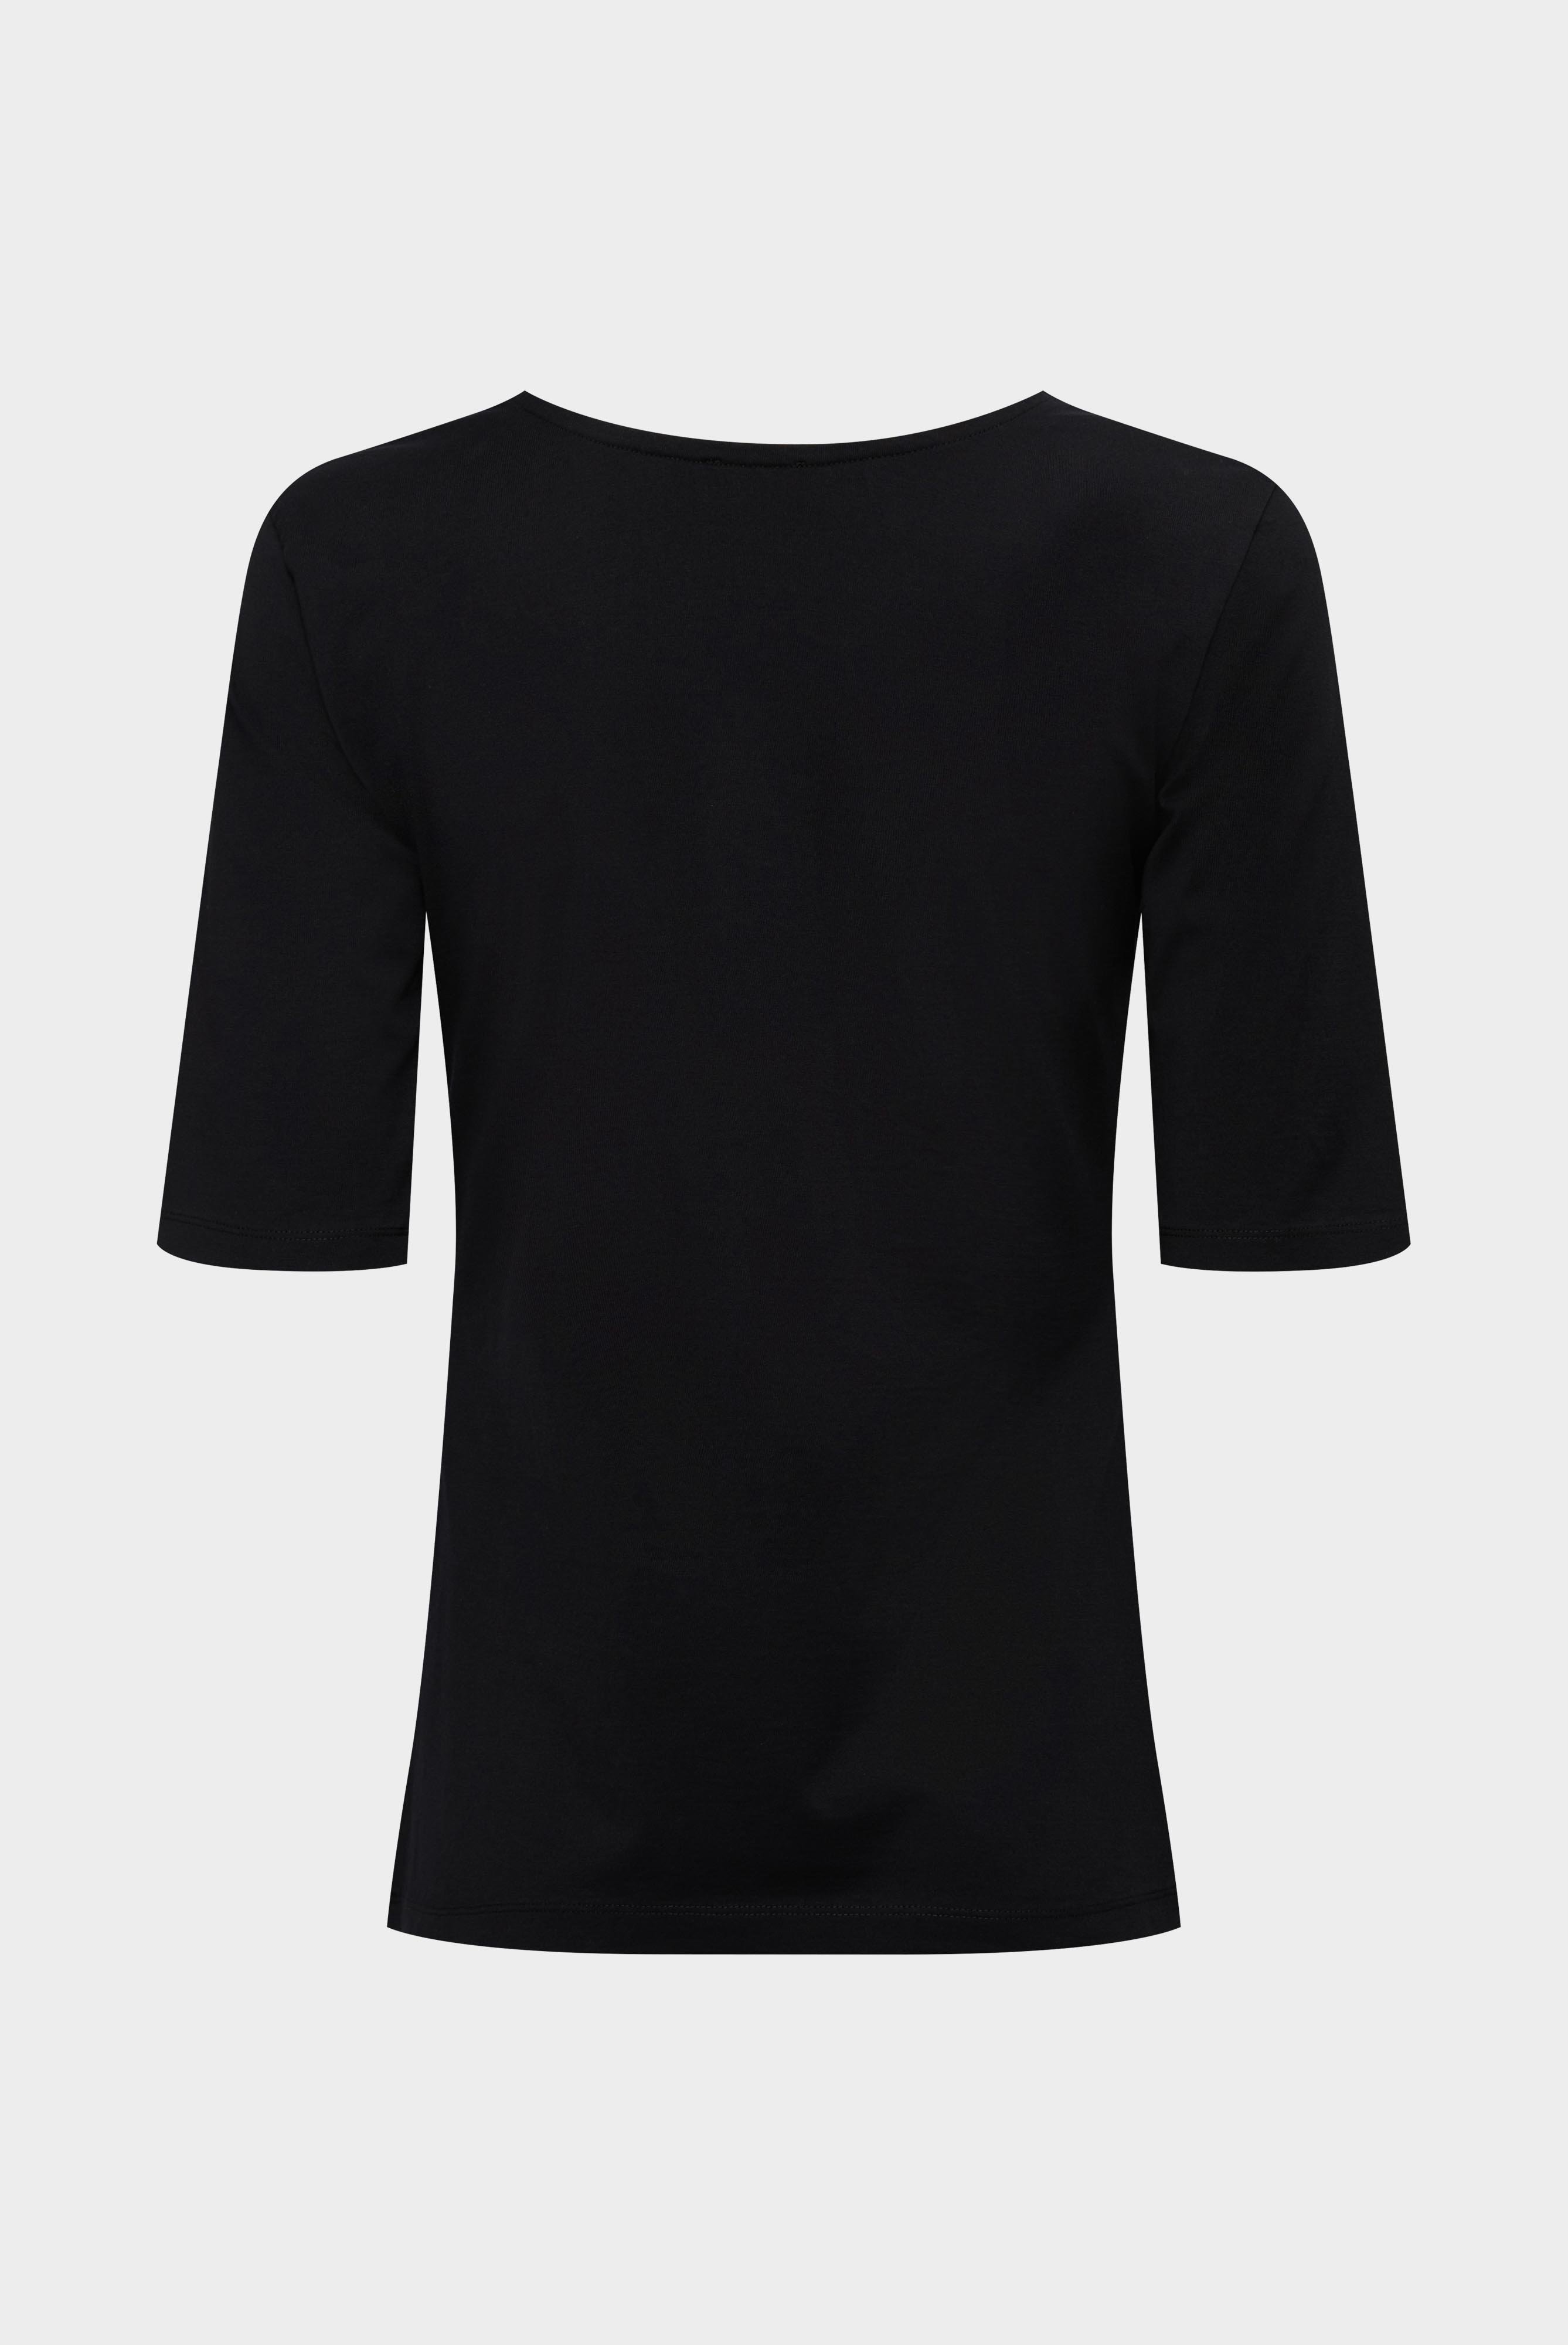 Tops & T-Shirts+Urban Jersey Wide Neck T-Shirt+05.2911..Z20044.099.XL